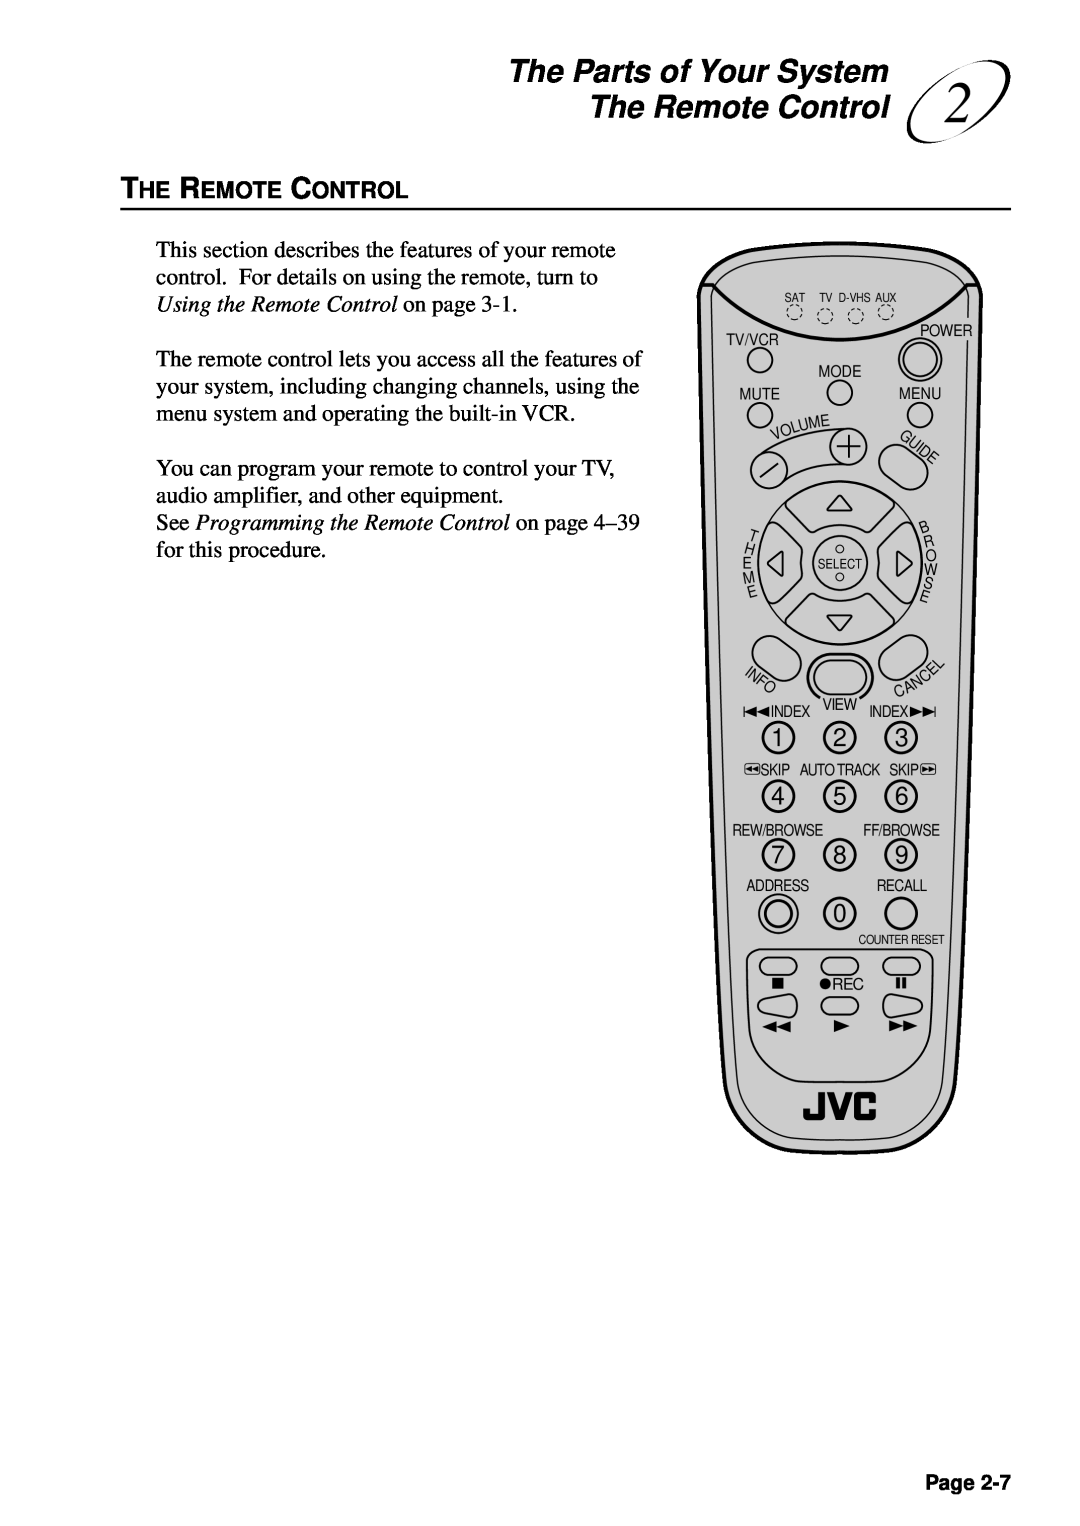 JVC HM-DSR100U, HM-DSR100DU, HM-DSR100RU manual The Remote Control, The Parts of Your System 